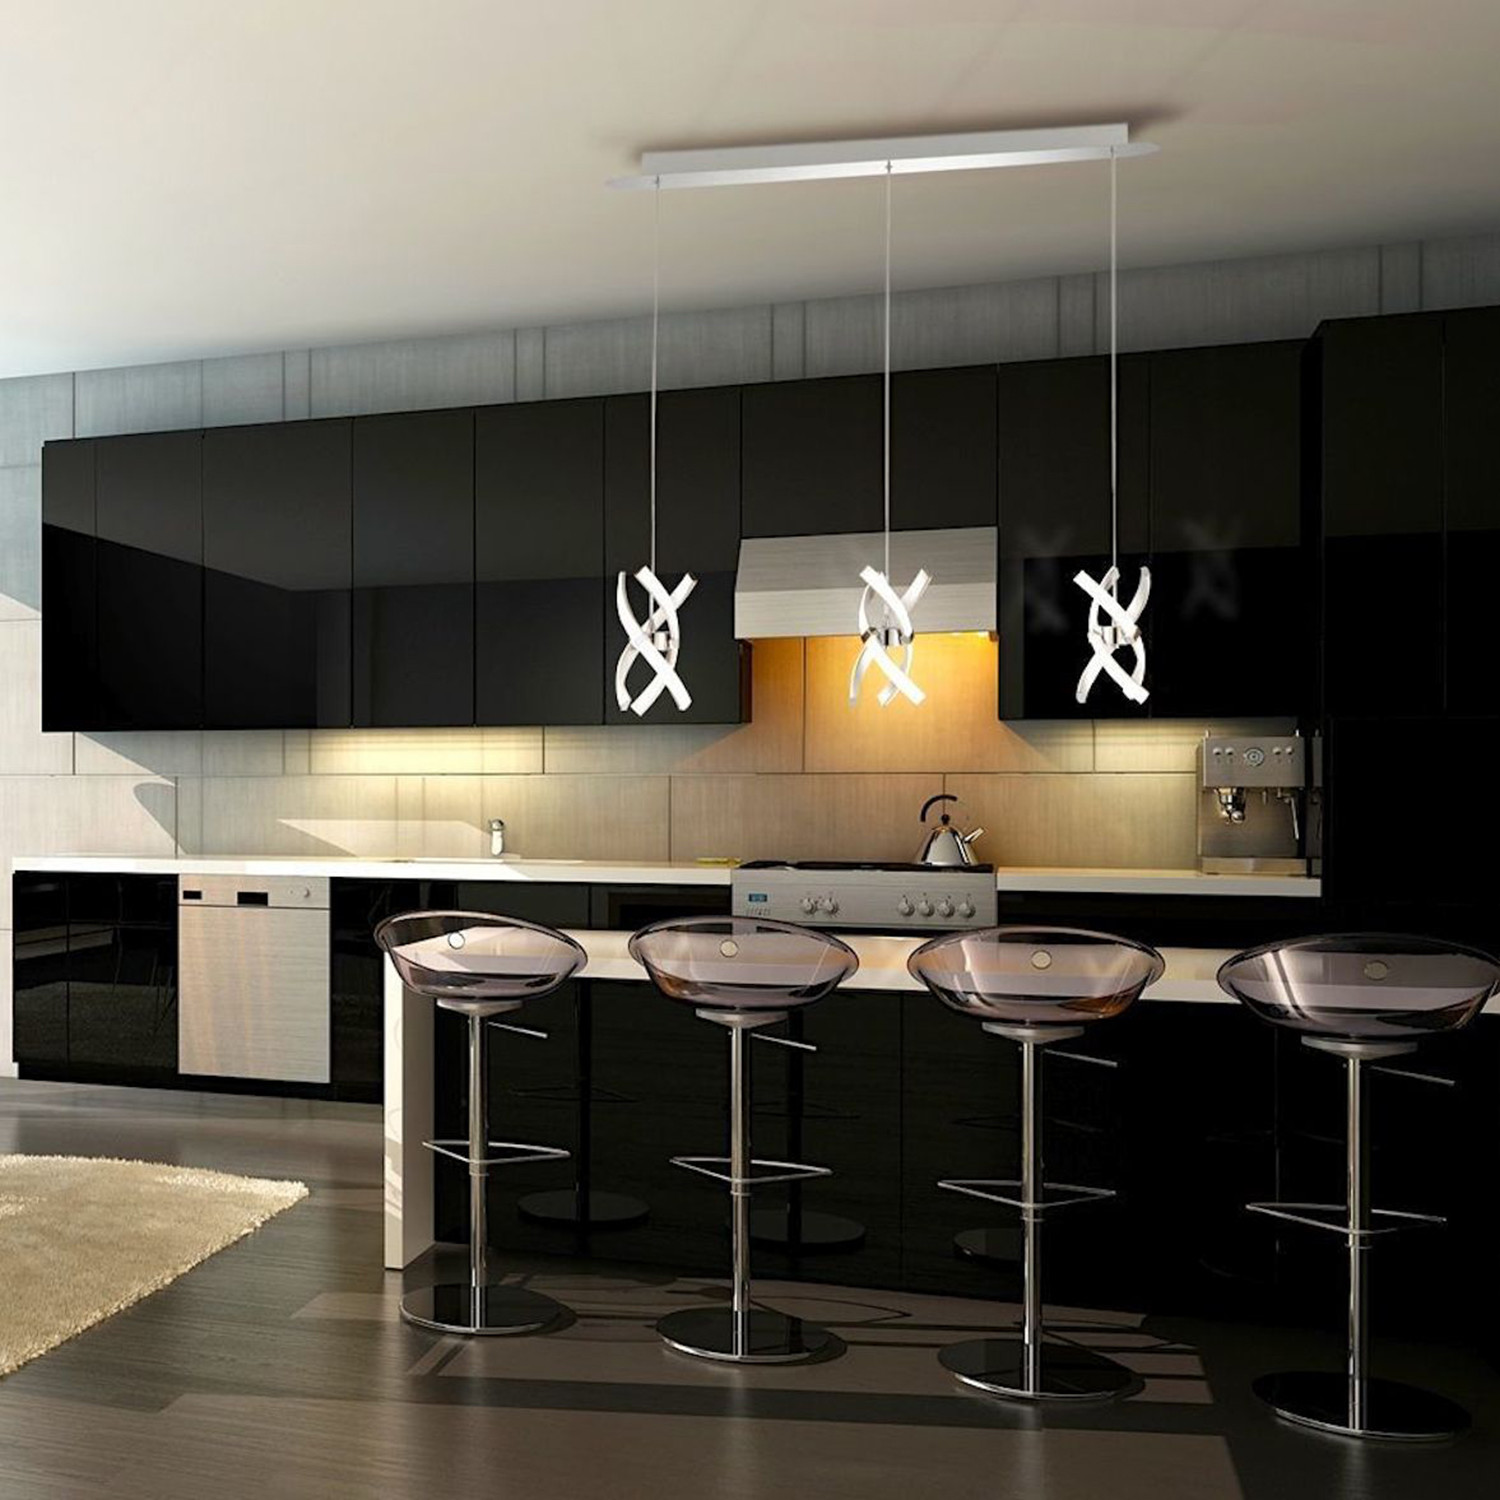 Hanging Led Lights For Kitchen Island - BEST HOME DESIGN IDEAS